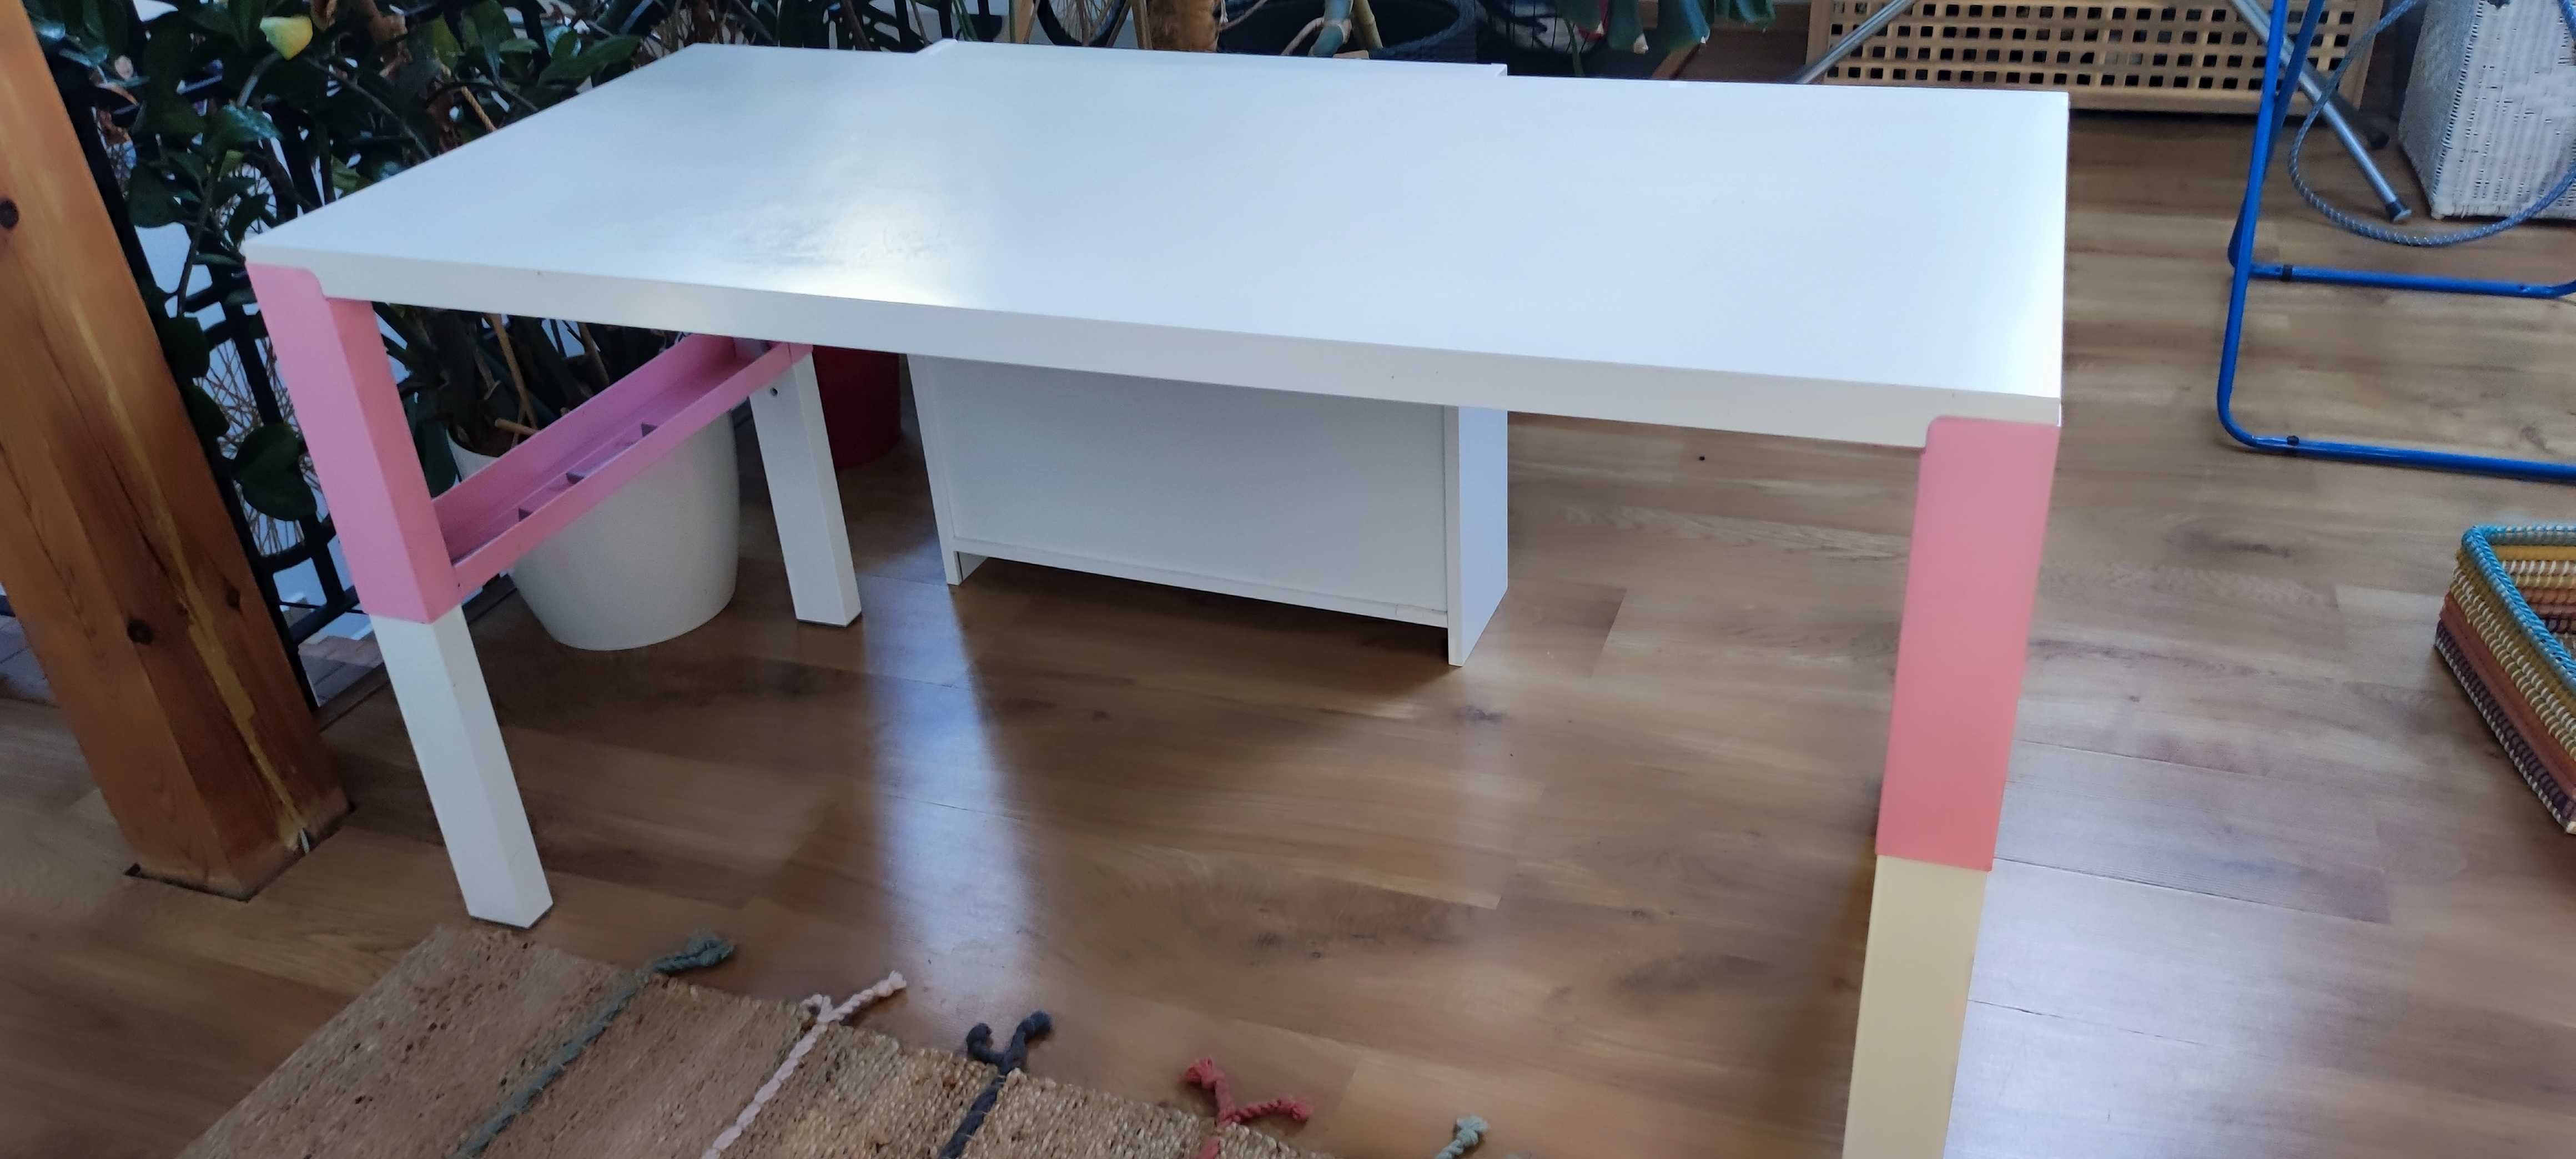 Zestaw mebli biurowych dla dziecka IKEA, biurko, półka i krzesło